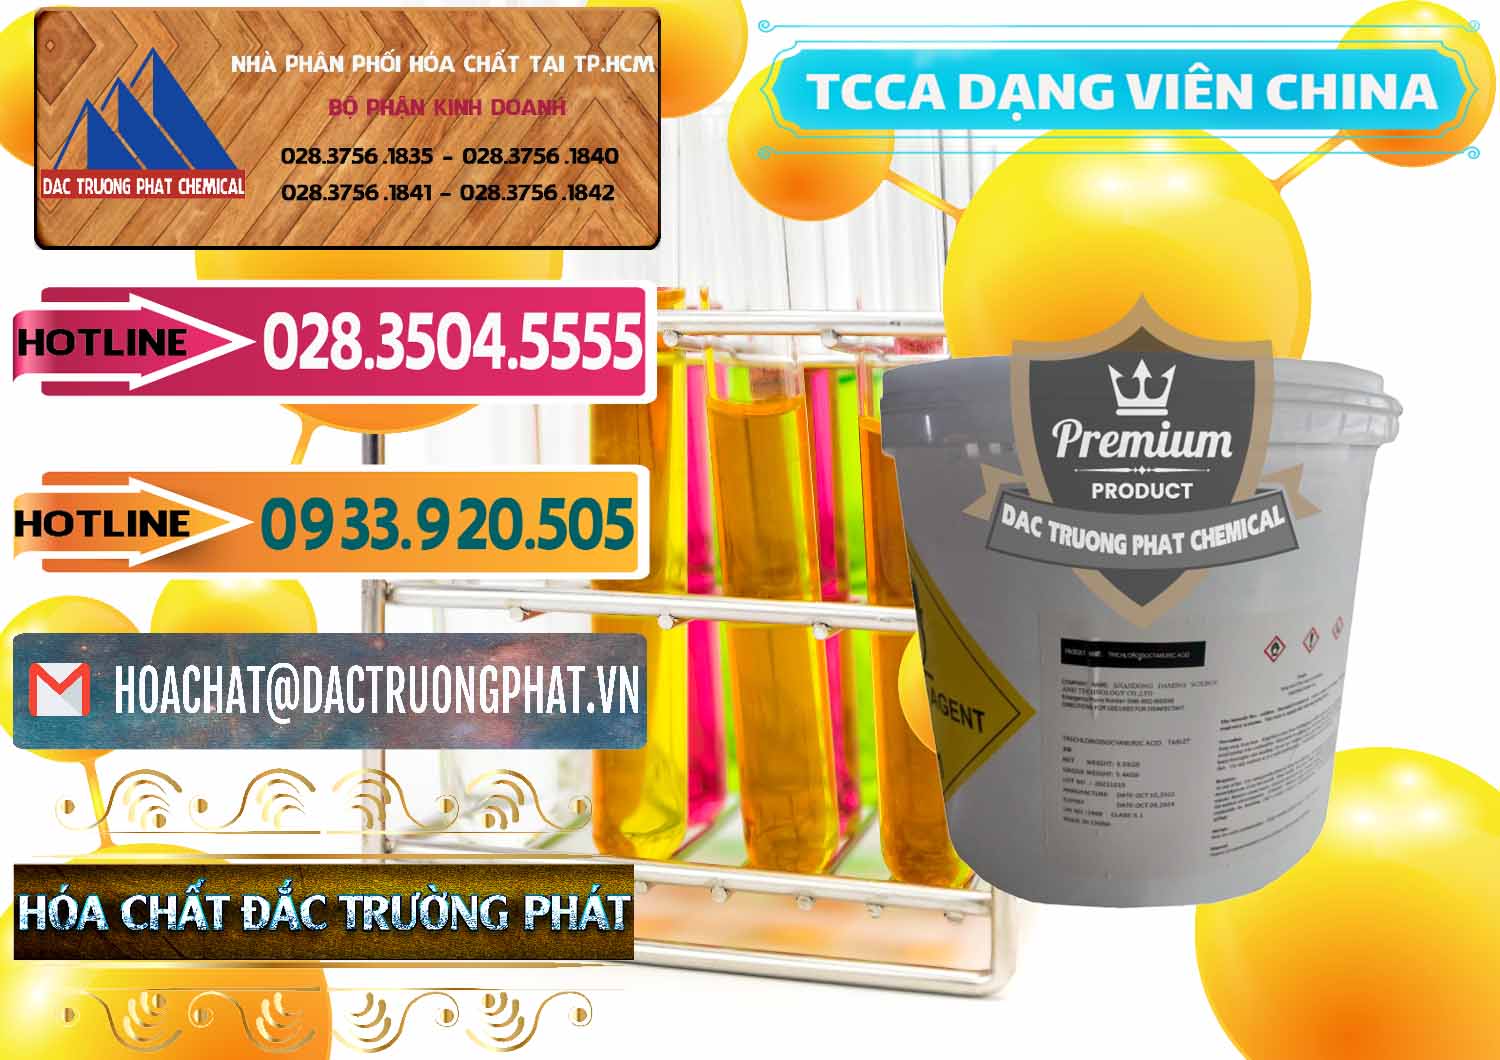 Cty cung cấp _ bán TCCA - Acid Trichloroisocyanuric Dạng Viên Thùng 5kg Trung Quốc China - 0379 - Cung cấp _ bán hóa chất tại TP.HCM - dactruongphat.vn